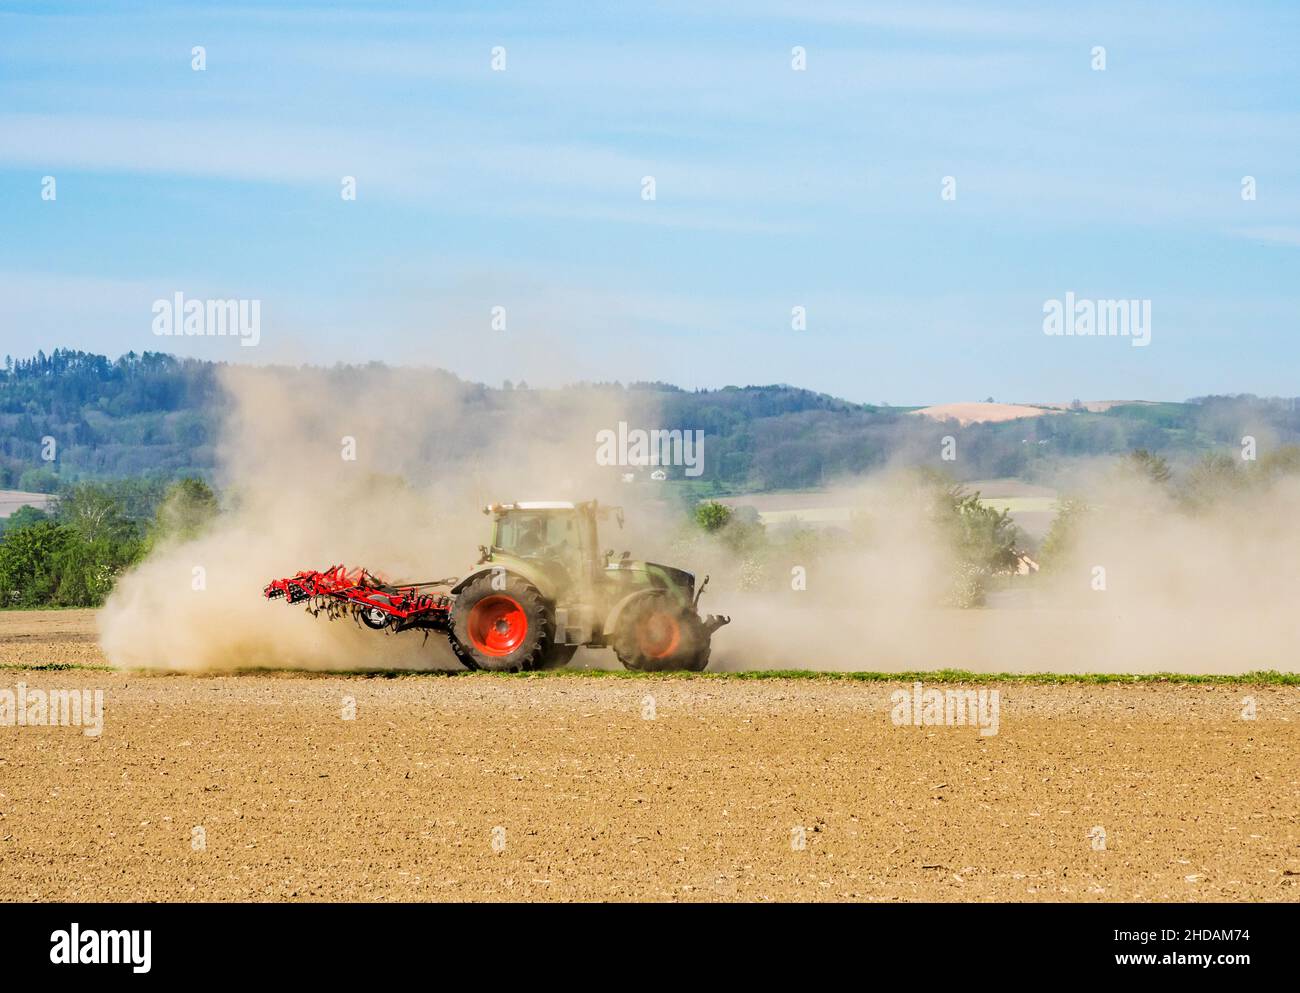 Ein Landwirt bestellt mit einer Zugamschine sein ausgetrocknetes Feld während einer Trockenperiode. Österreich, OÖ, Bezirk Eferding Stock Photo